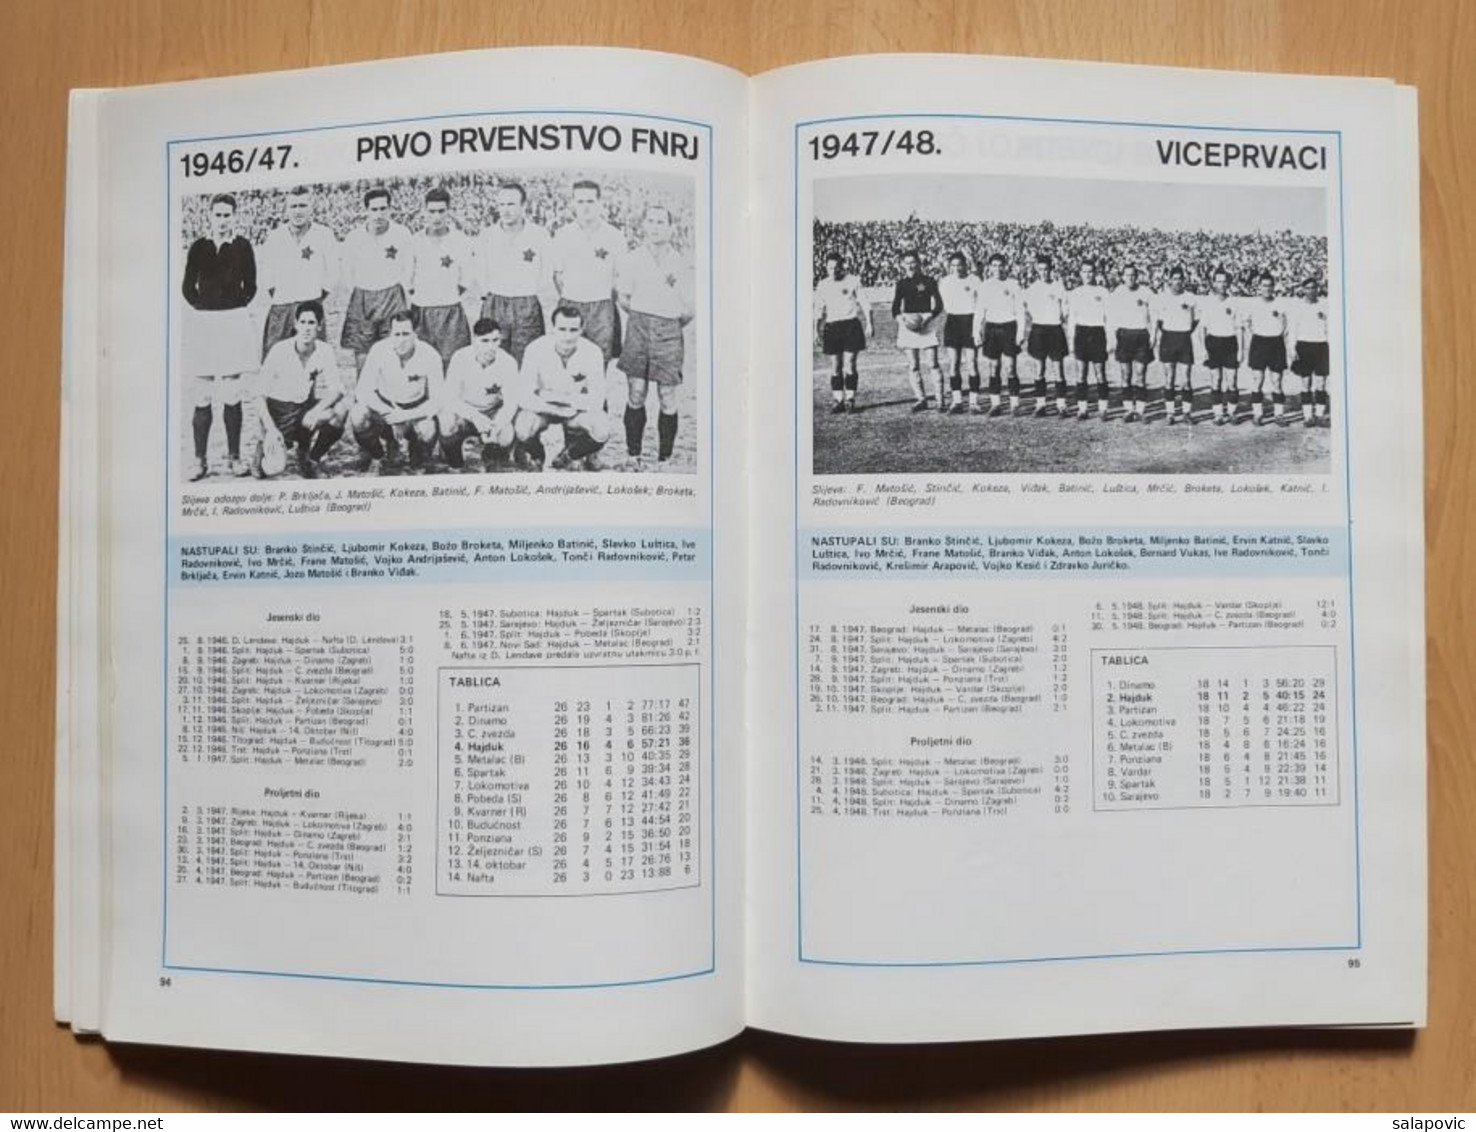 Hajduk Split 1911-1977 Srećko Eterović  monografija football club Croatia, monograph